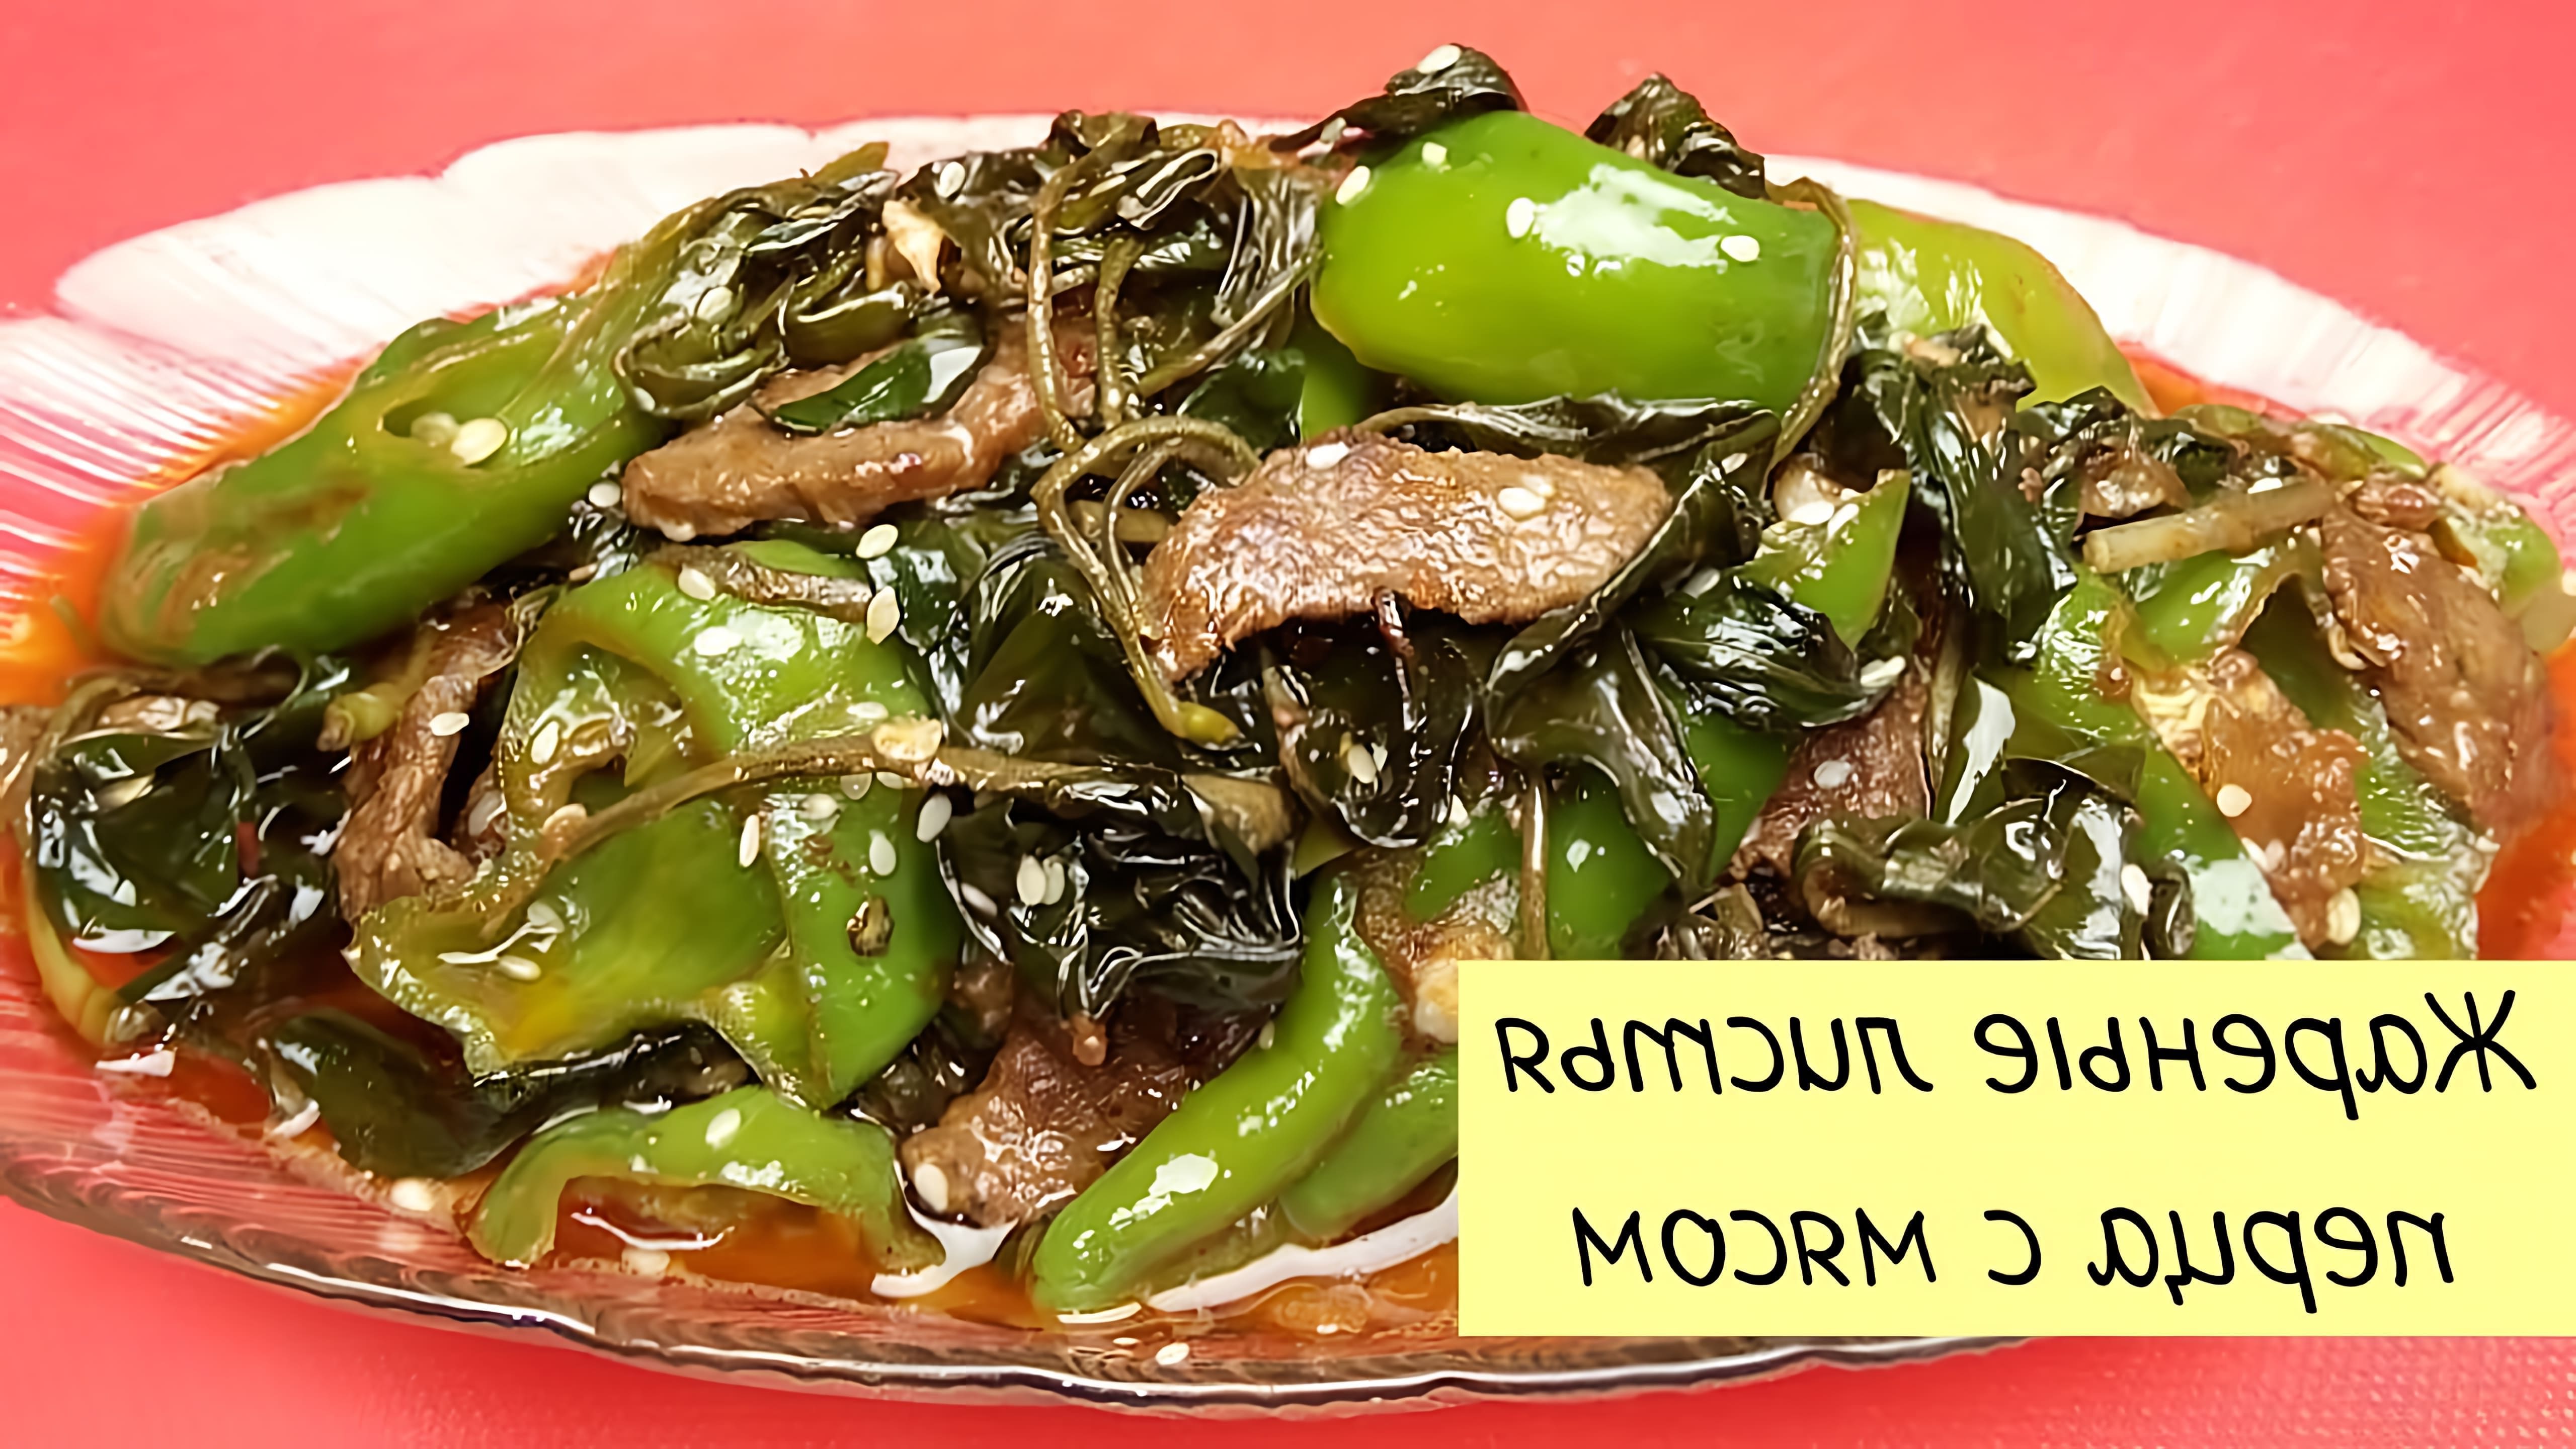 В этом видео демонстрируется процесс приготовления жареных листьев перца с мясом, который является популярным блюдом в корейской кухне